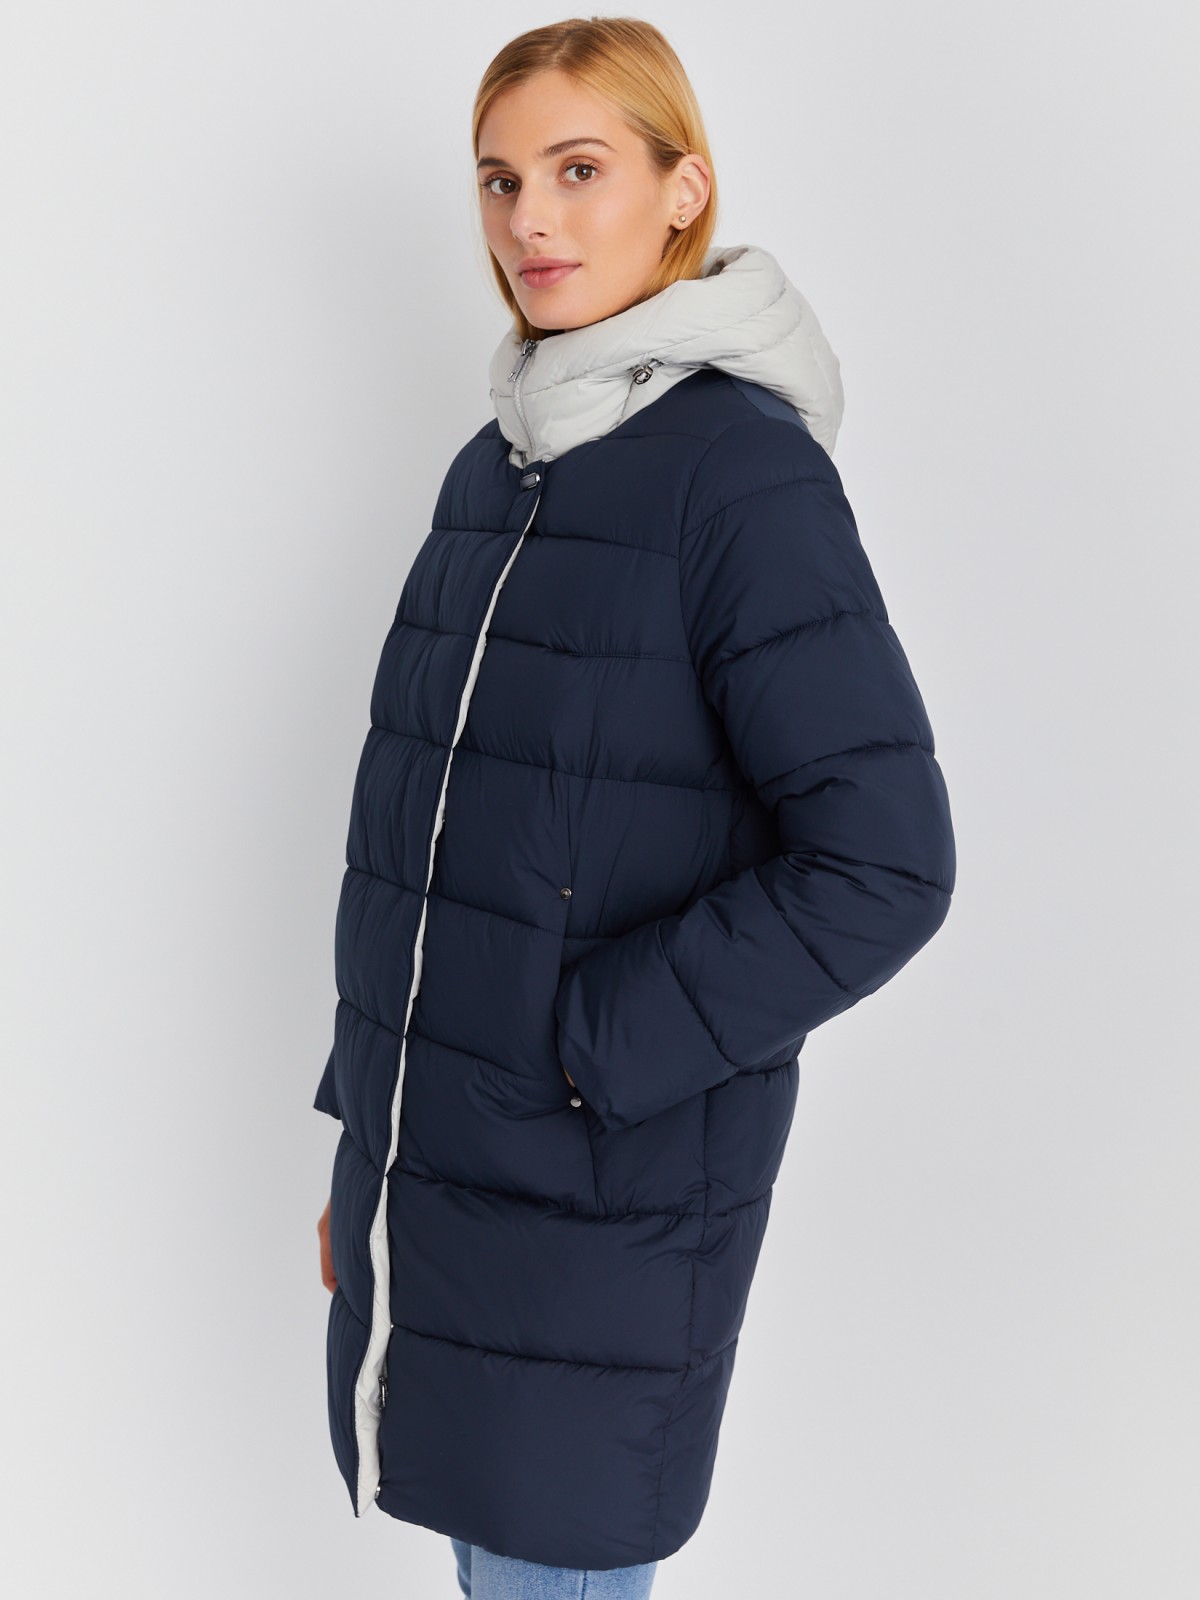 Тёплая стёганая куртка-пальто на молнии с акцентным капюшоном zolla 023345212024, цвет синий, размер S - фото 3